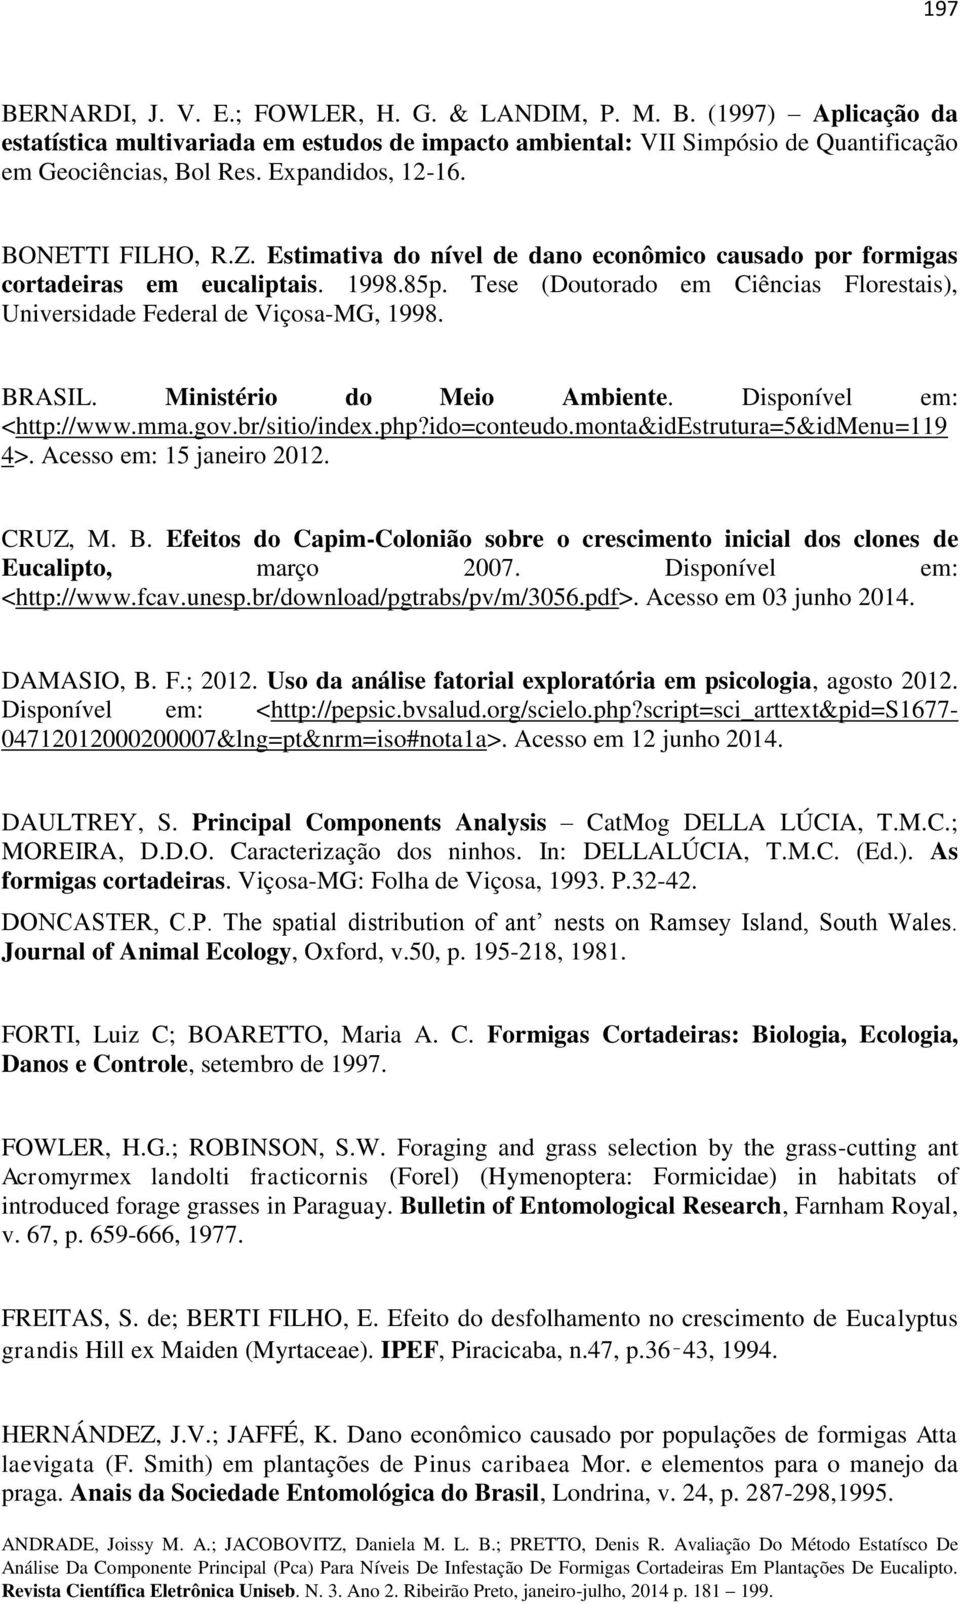 Tese (Doutorado em Ciências Florestais), Universidade Federal de Viçosa-MG, 1998. BRASIL. Ministério do Meio Ambiente. Disponível em: <http://www.mma.gov.br/sitio/index.php?ido=conteudo.